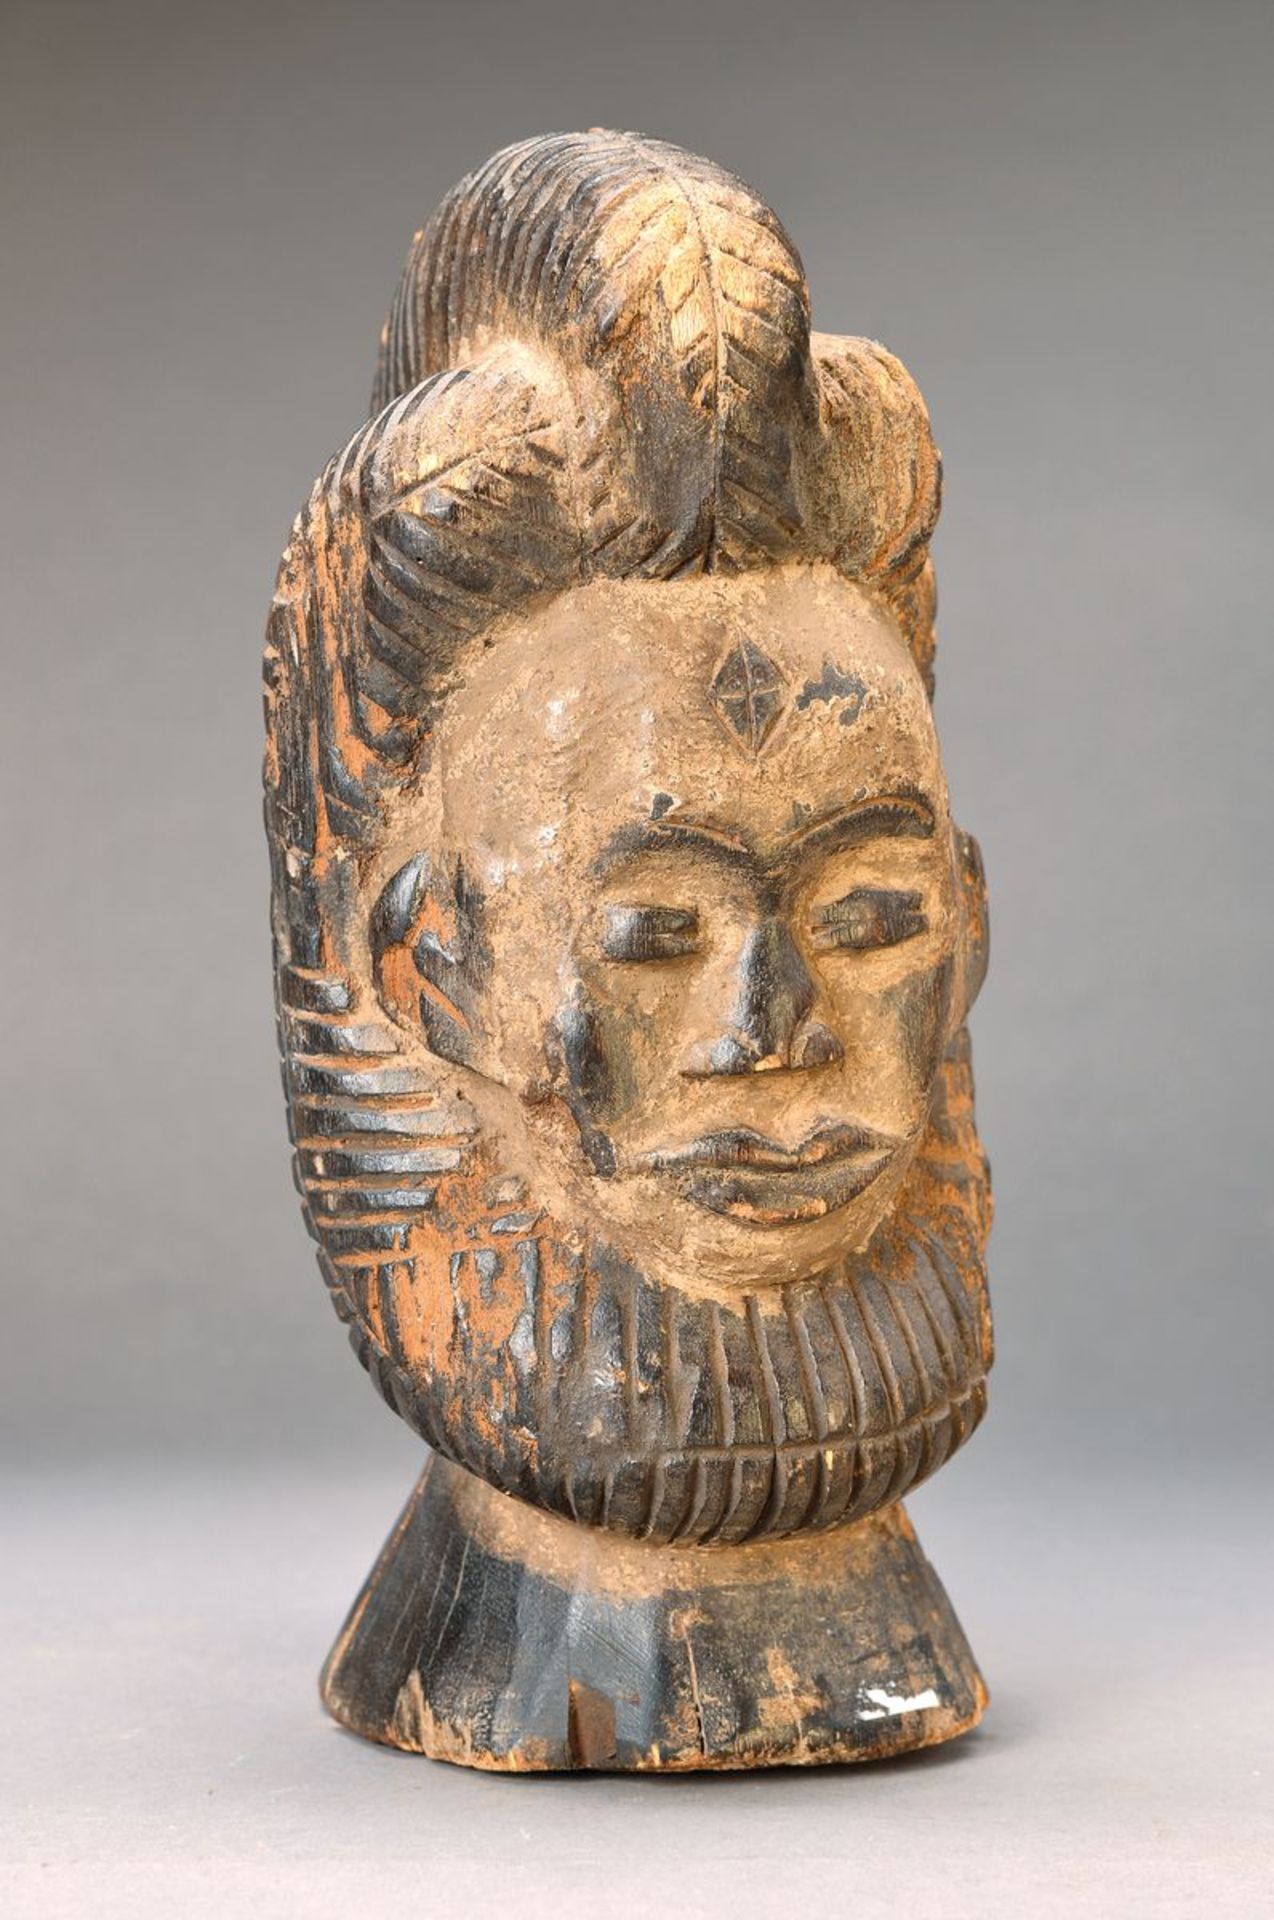 Kopf, wohl Kamerun, ca. 50 Jahre alt, Hartholz aus einem Stück geschnitzt, weiblicher Kopf,